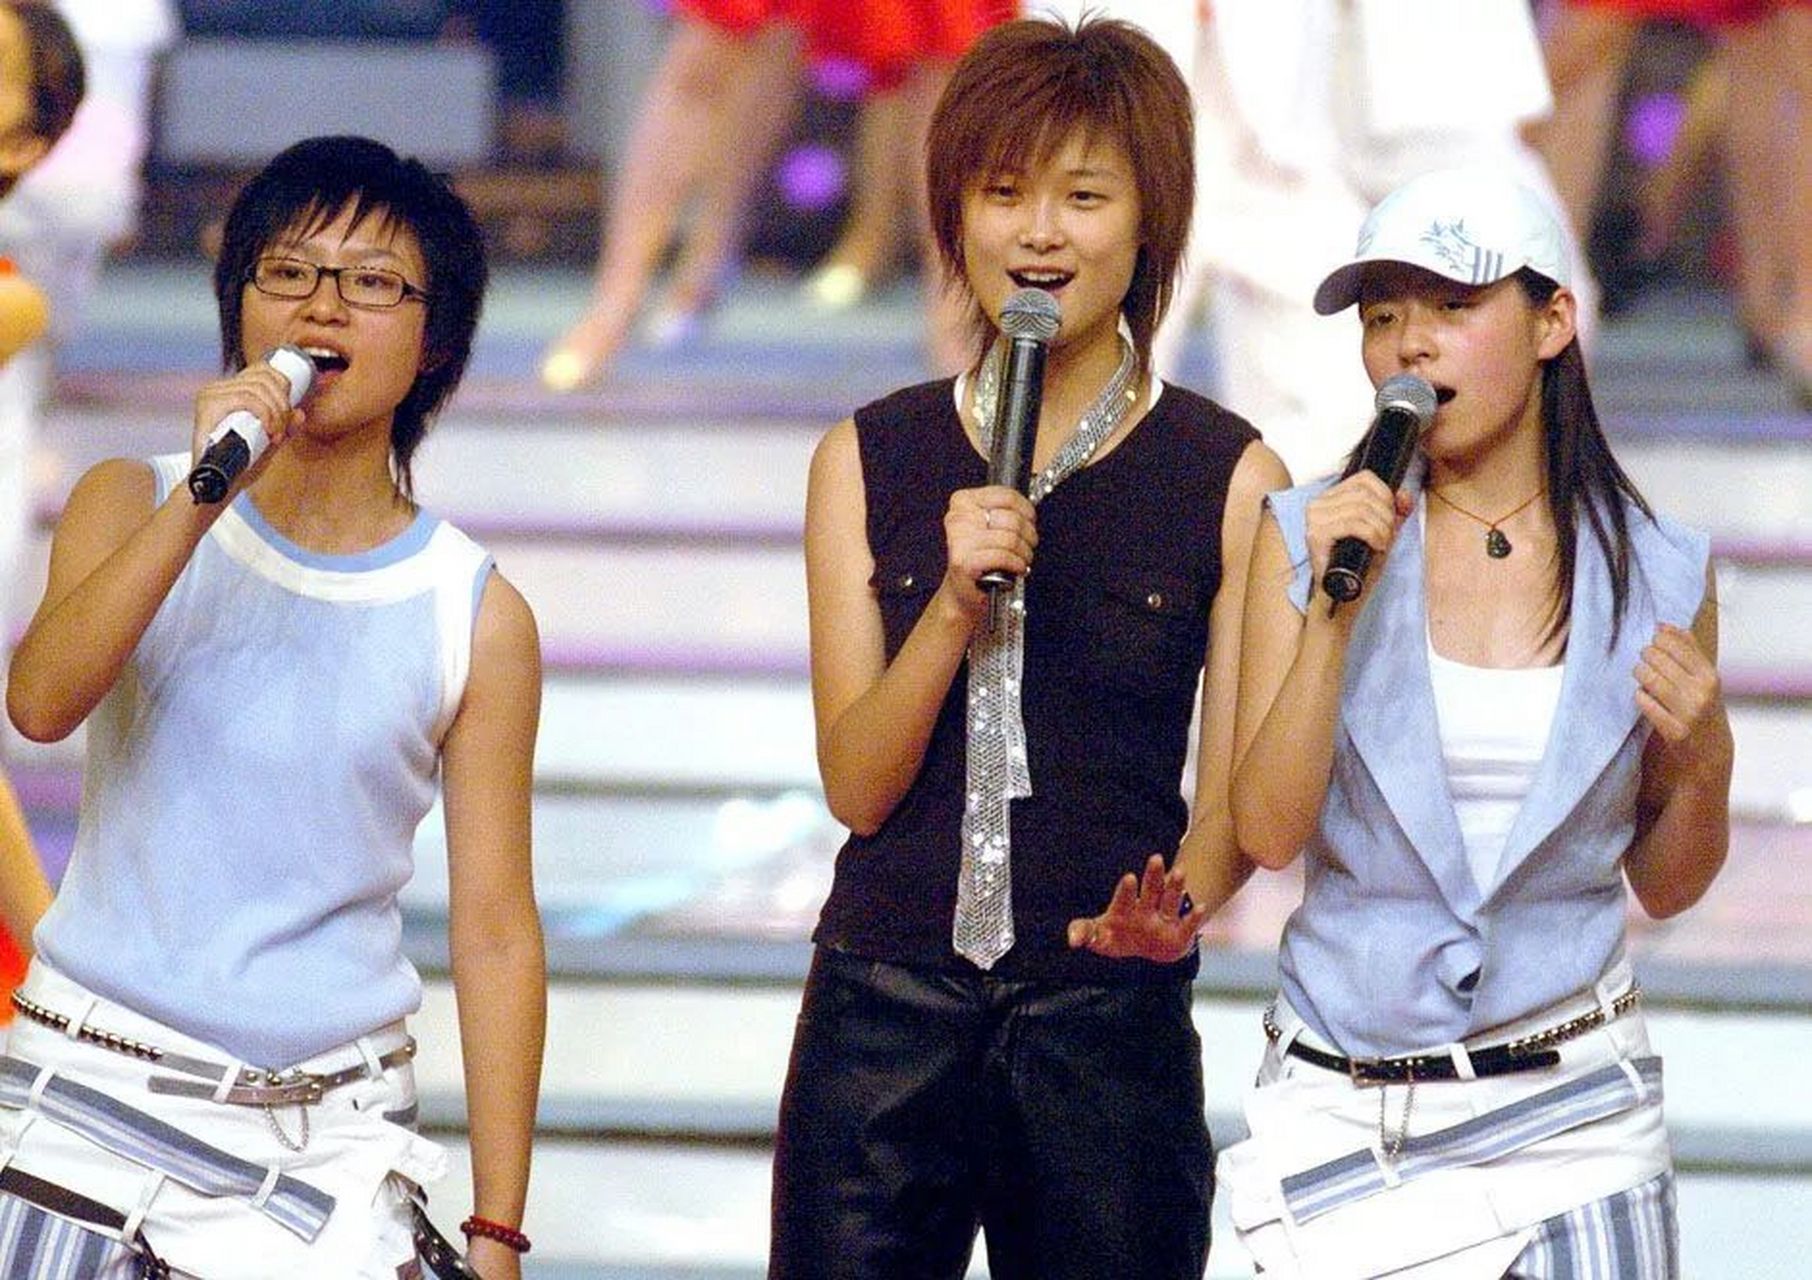 超级女声: 2004年,第一届:冠军安又琪,亚军王媞,季军张含韵 2005年